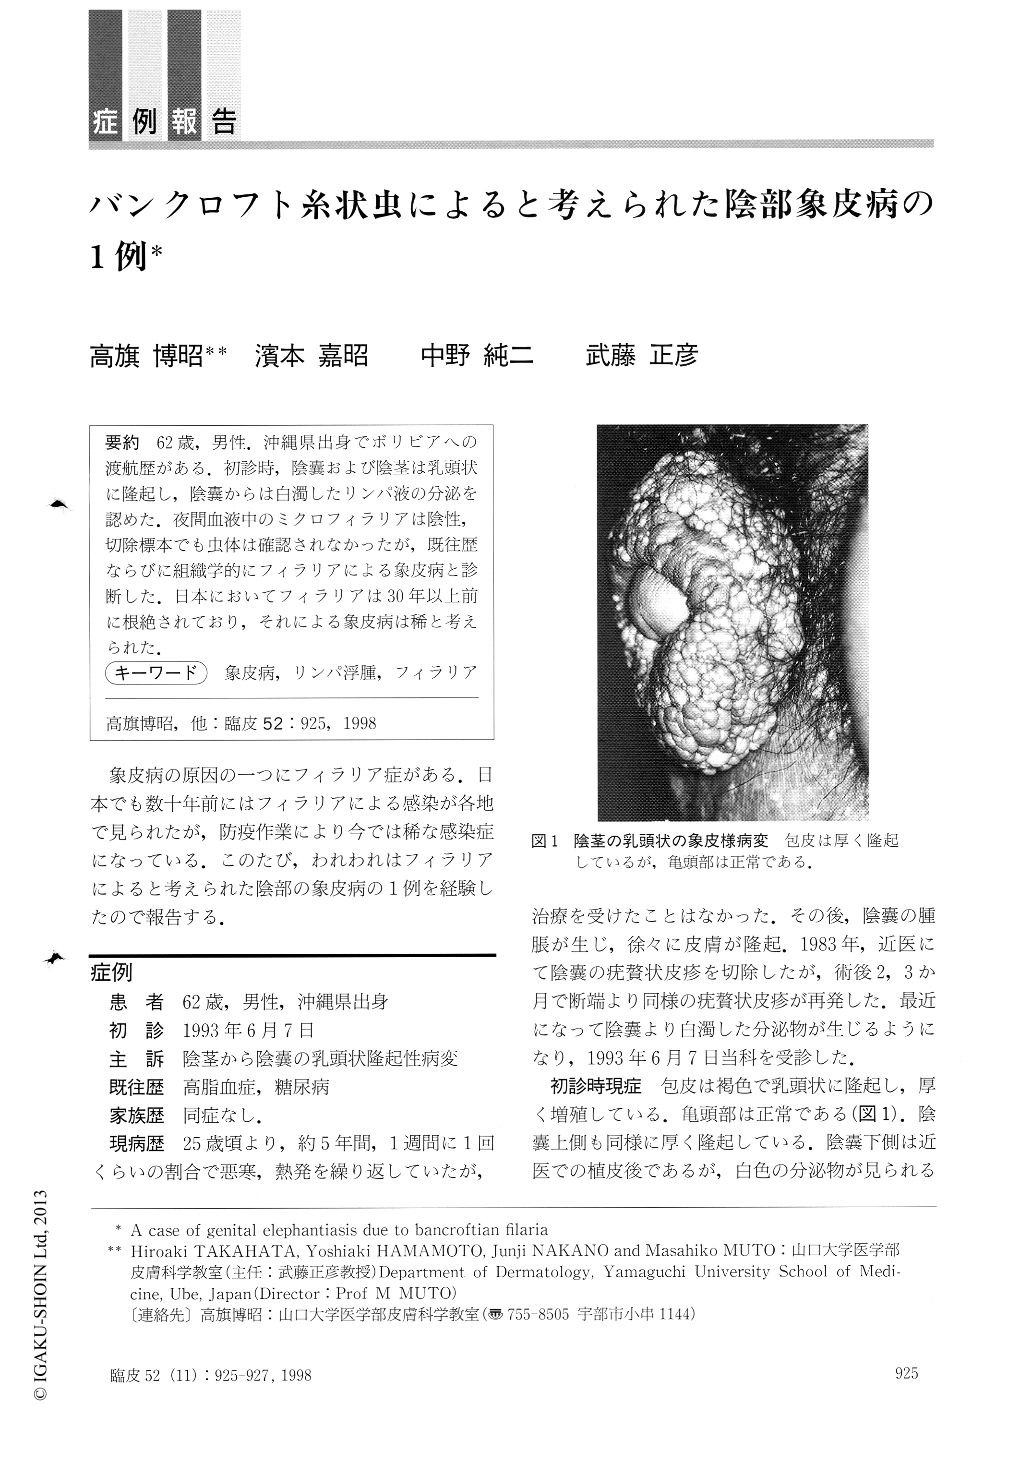 バンクロフト糸状虫によると考えられた陰部象皮病の1例 臨床皮膚科 52巻11号 医書 Jp